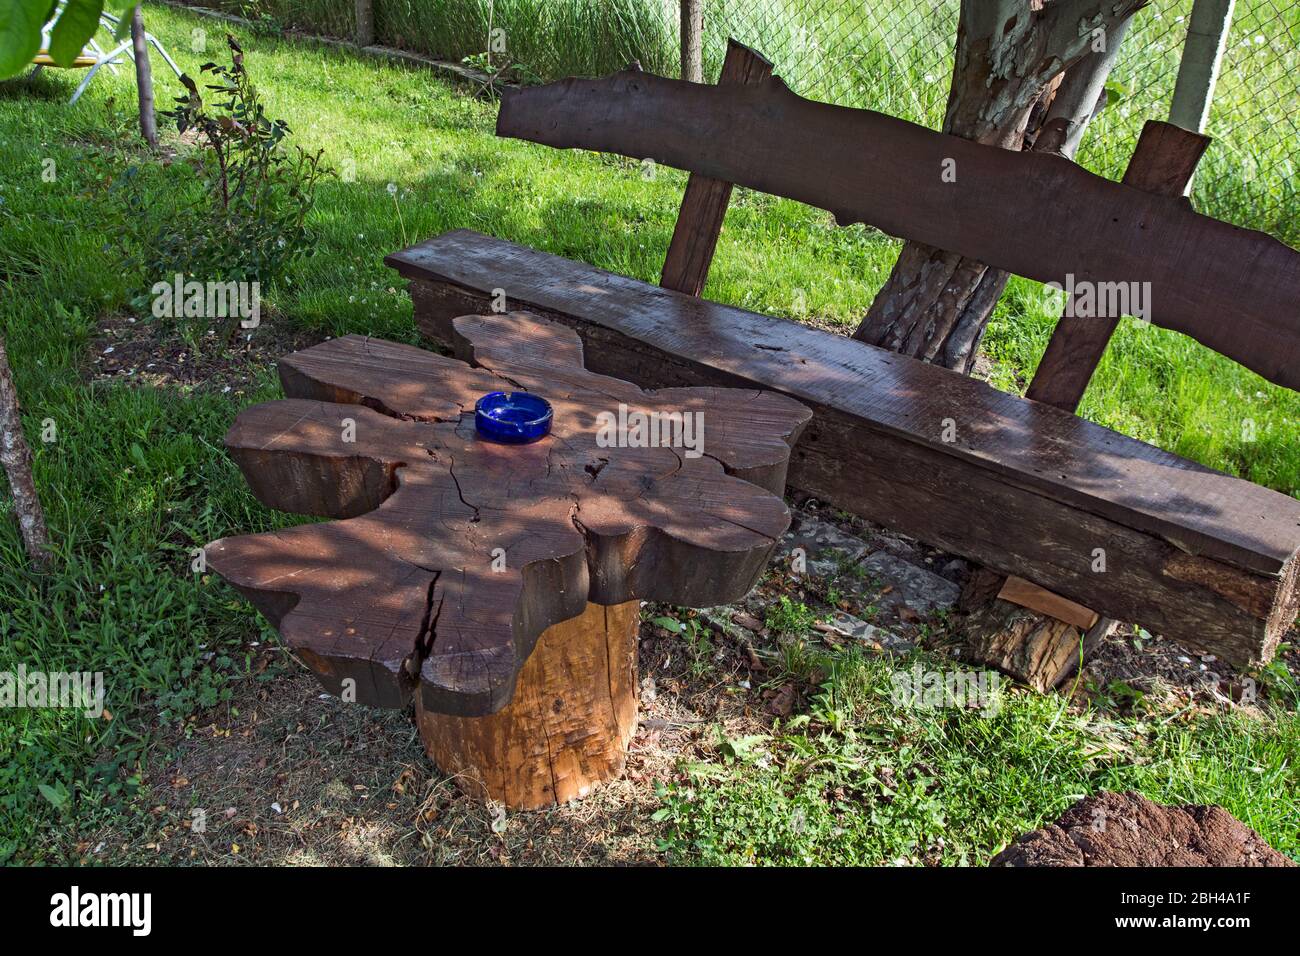 Posto tranquillo e tranquillo in un piccolo parco con panca e tavolo in legno. La panchina e il tavolo all'ombra sono in attesa di visitatori. Foto Stock